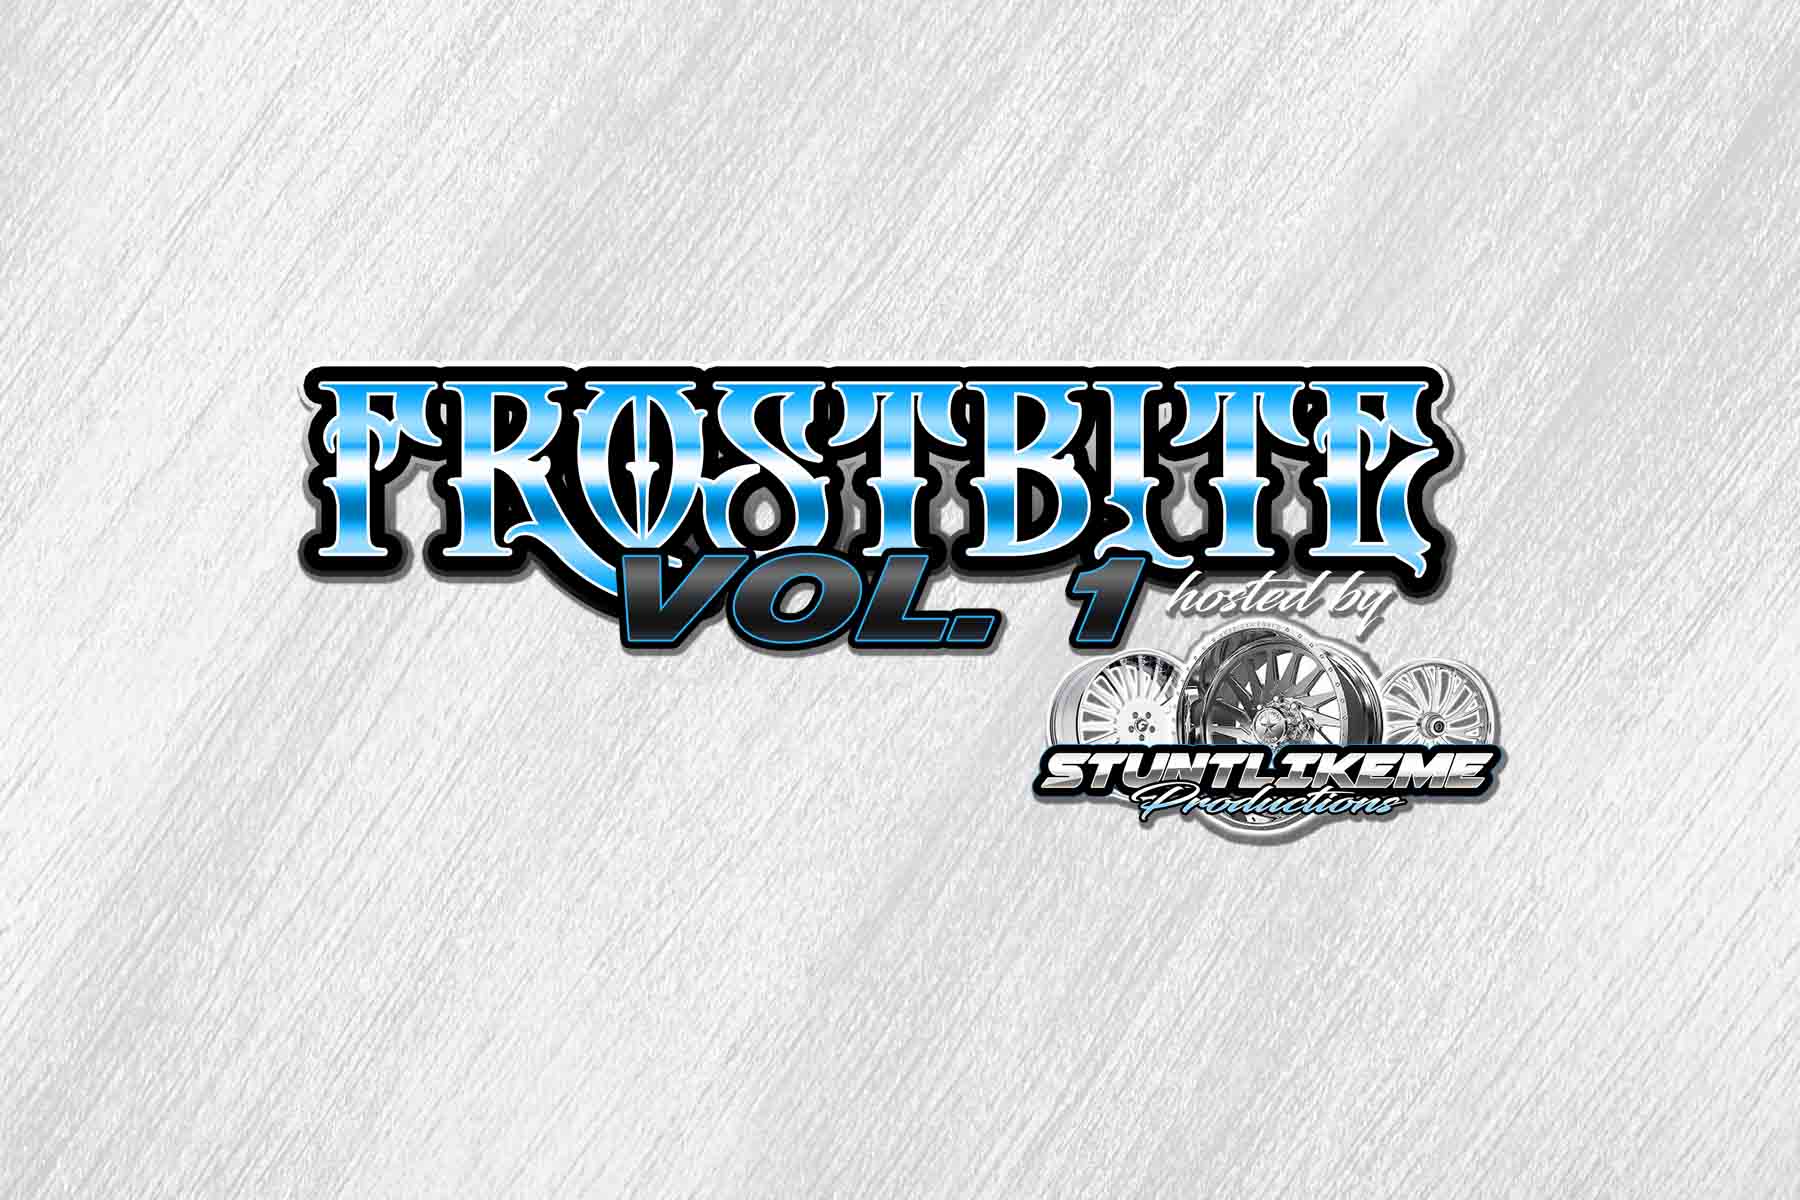 Frostbite, Vol. 1 Car/Truck/Bike Show Virginia